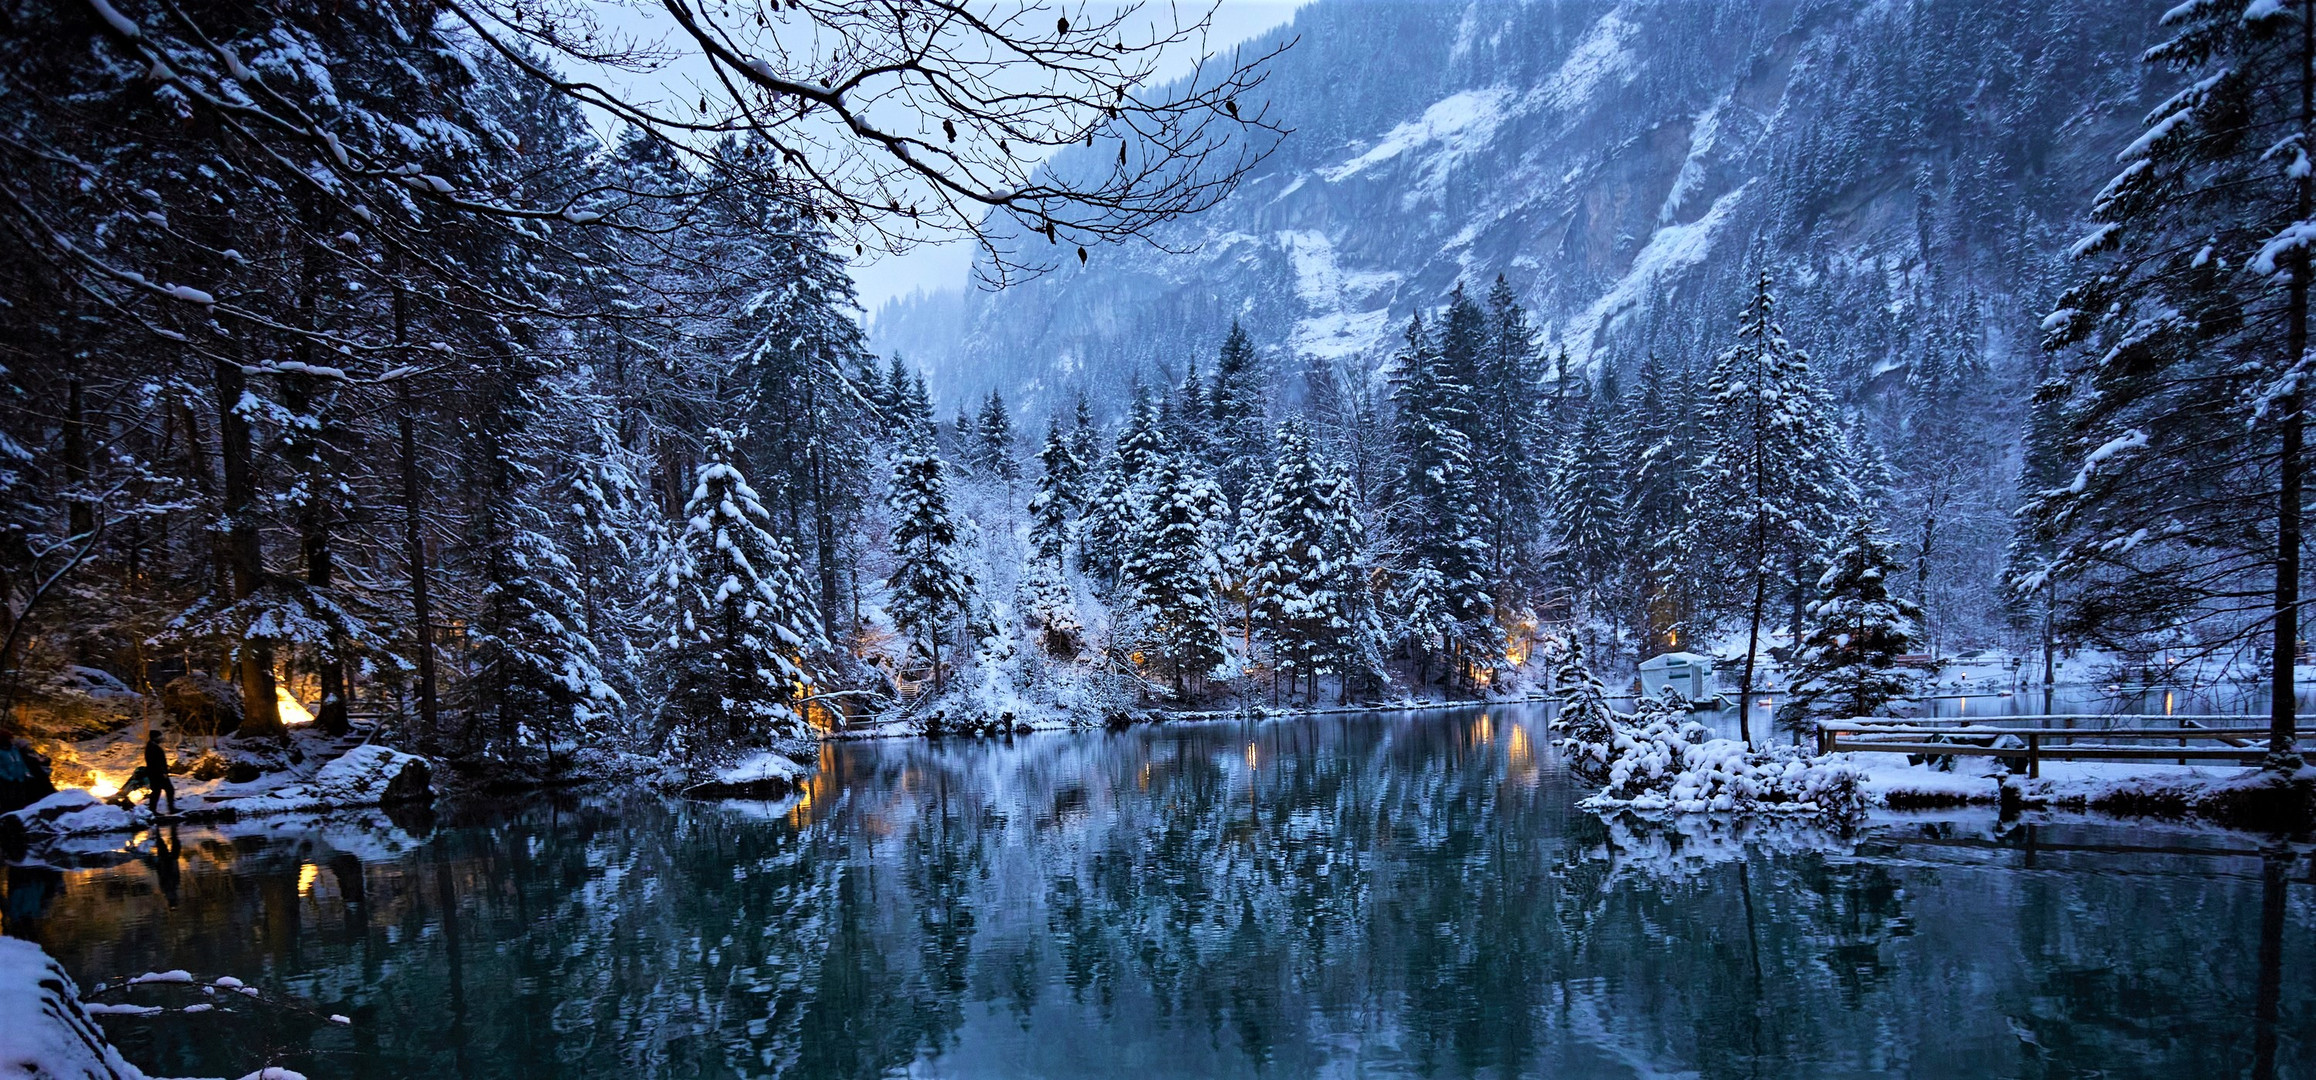 Blausee Winter wonderland